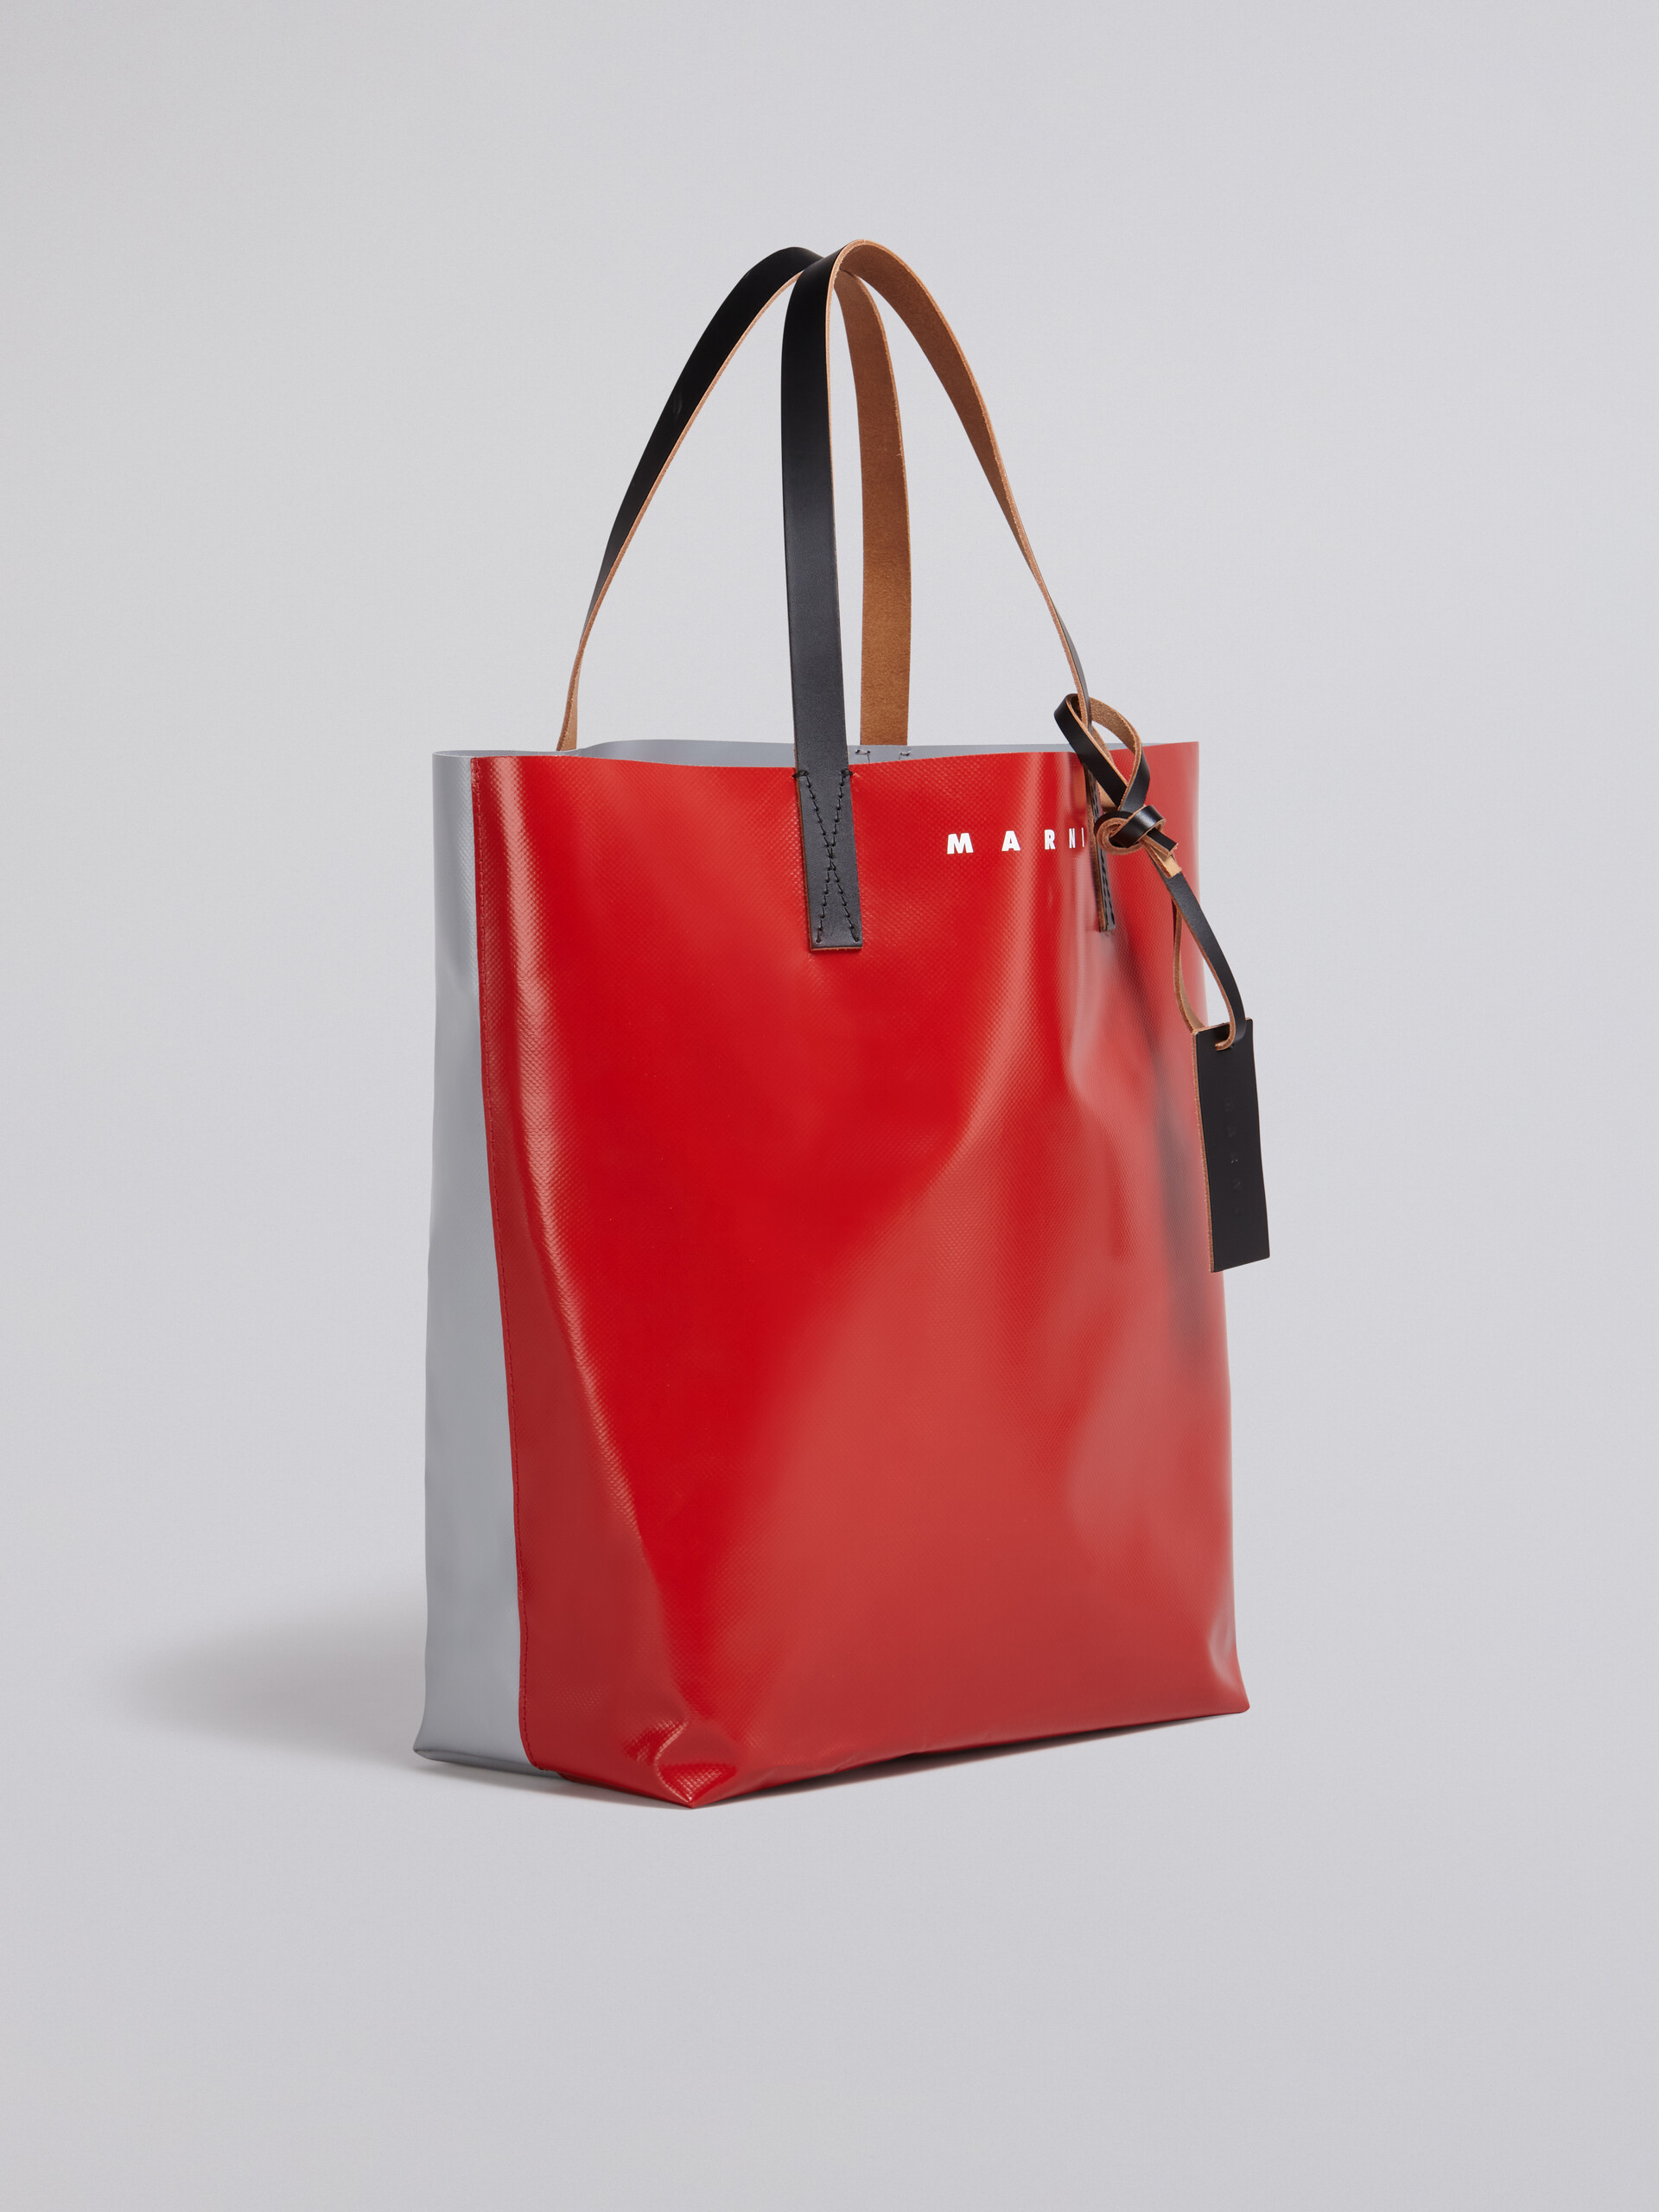 Borsa shopping in PVC rosso e grigio con manici in pelle - Borse shopping - Image 5